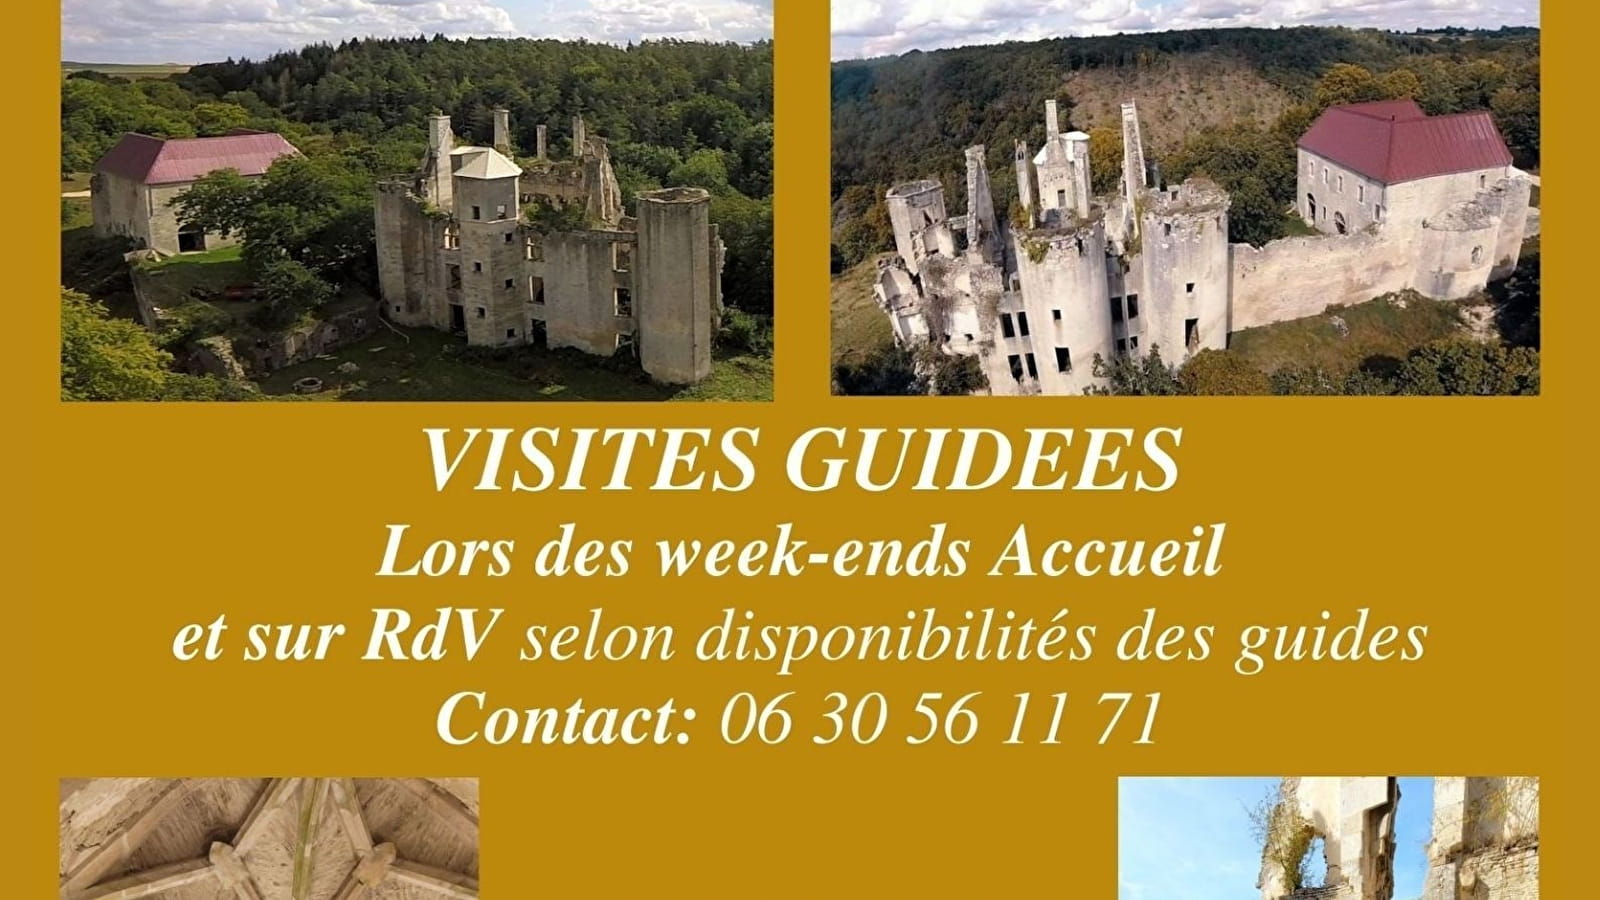 Besichtigungen des Schlosses von Rochefort das ganze Jahr über nach Vereinbarung